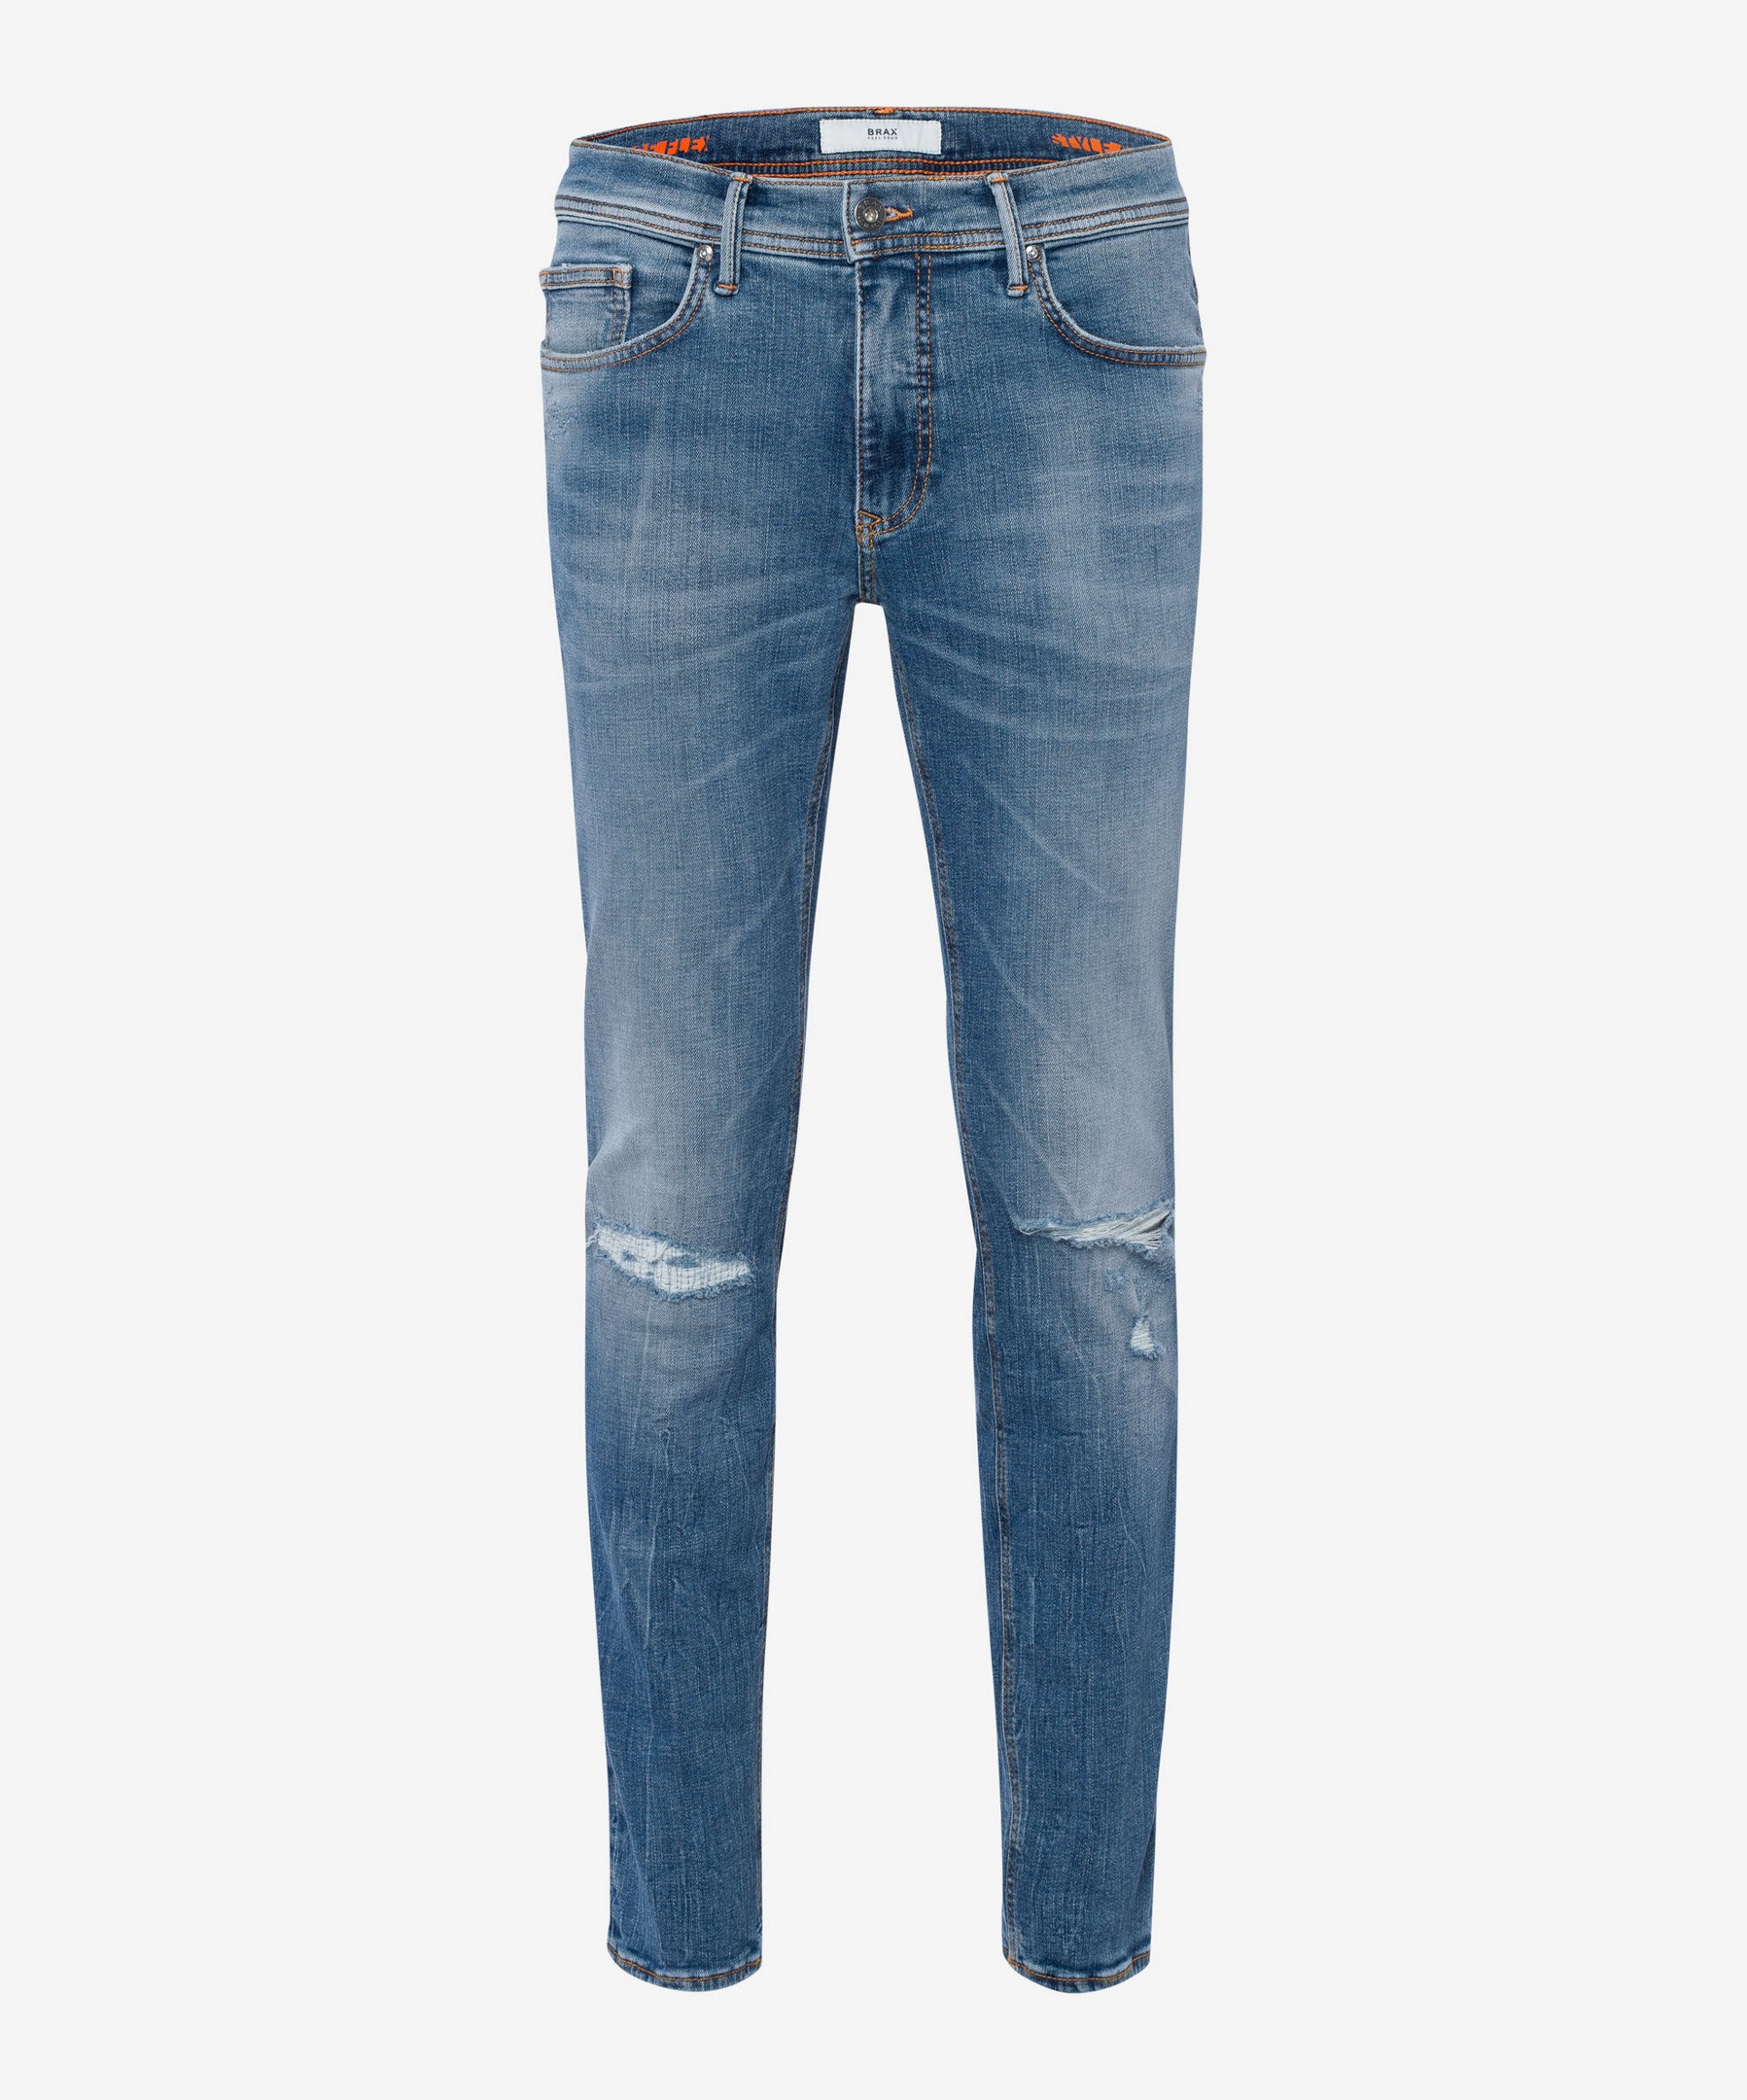 Superstretch | Destroyed Jeans Hi-Flex Blue Jan 5-Pocket Planet Fashion Vintage Rozing Men\'s Chris Indigo Denim Blue Brax